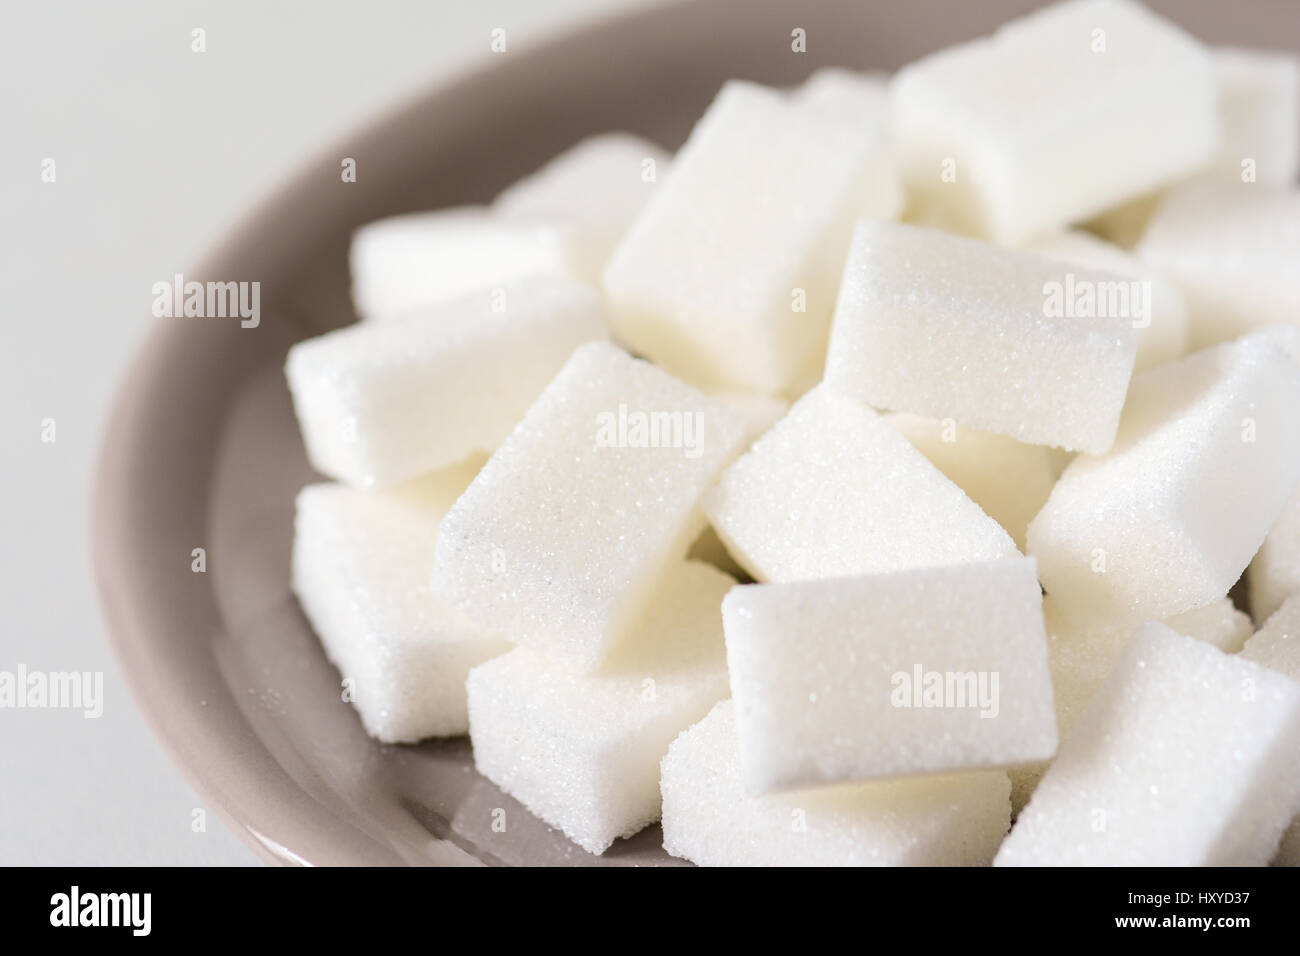 Libre d'un tas de cubes de sucre raffiné blanc Banque D'Images